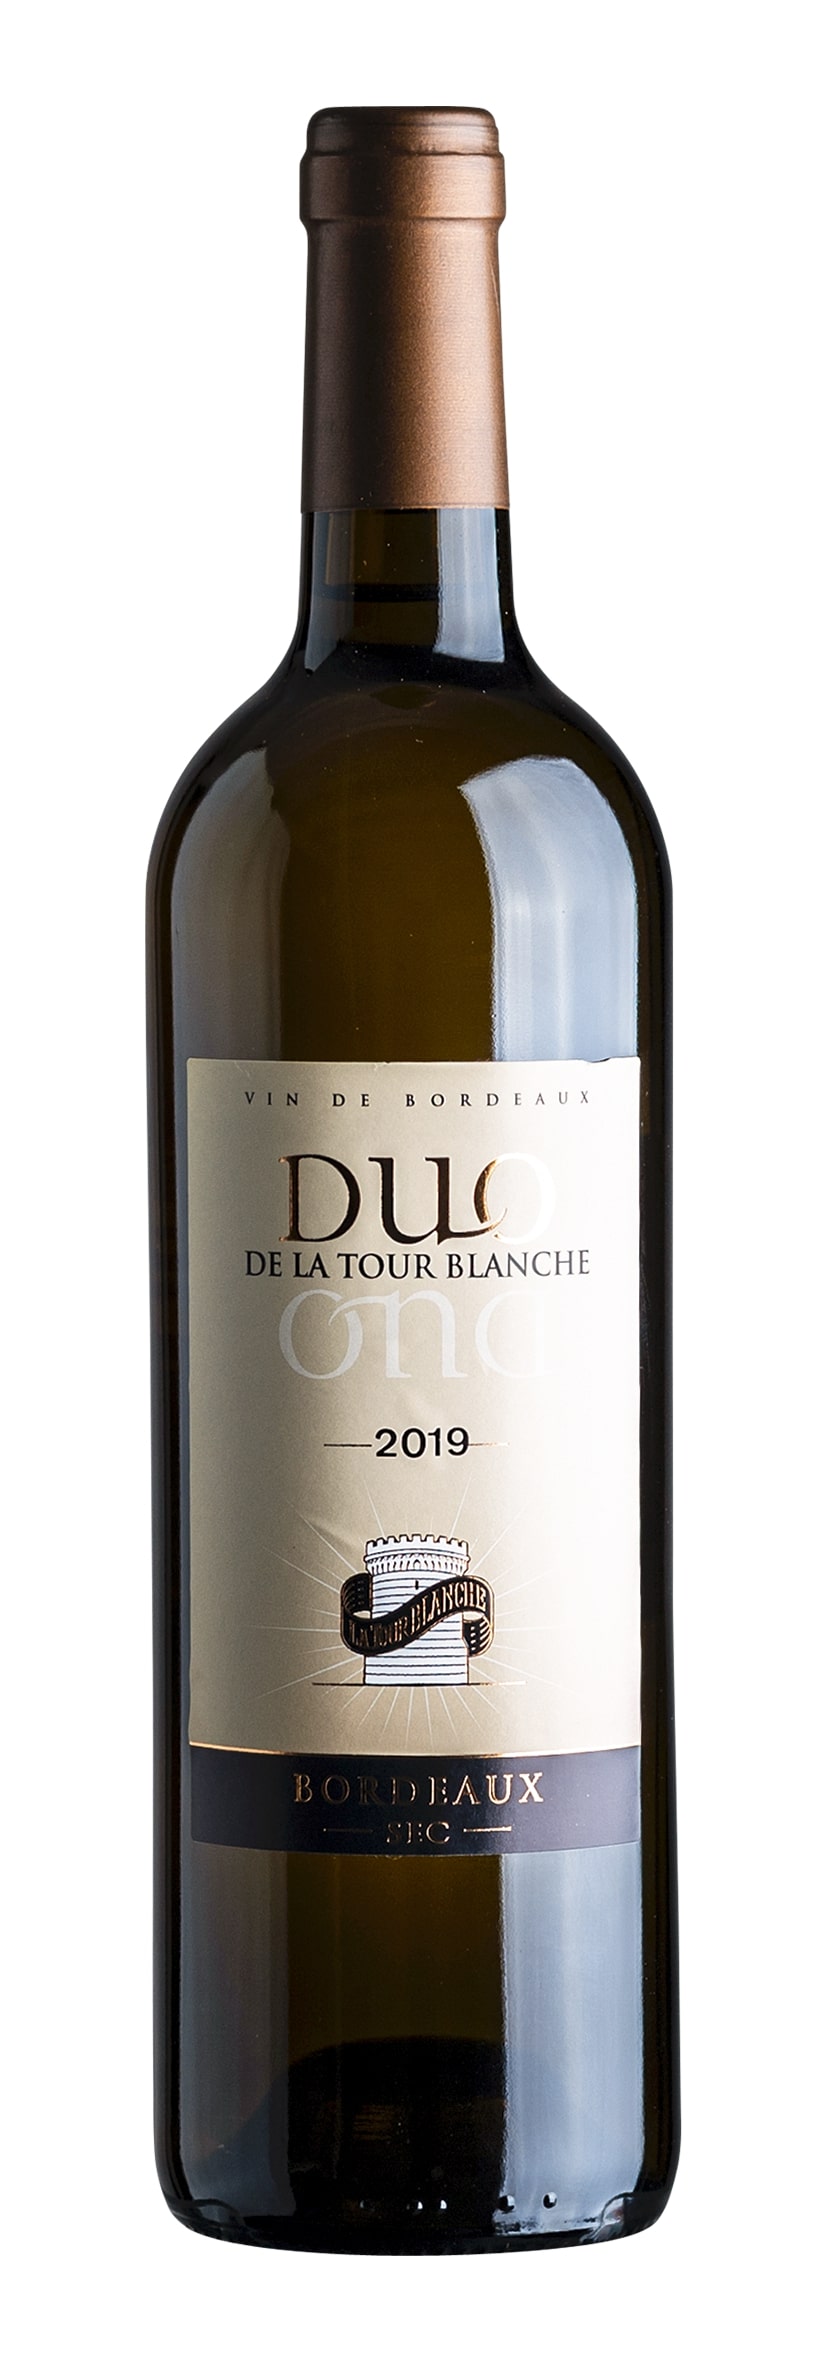 Bordeaux Blanc AOC La Tour Blanche Duo 2019